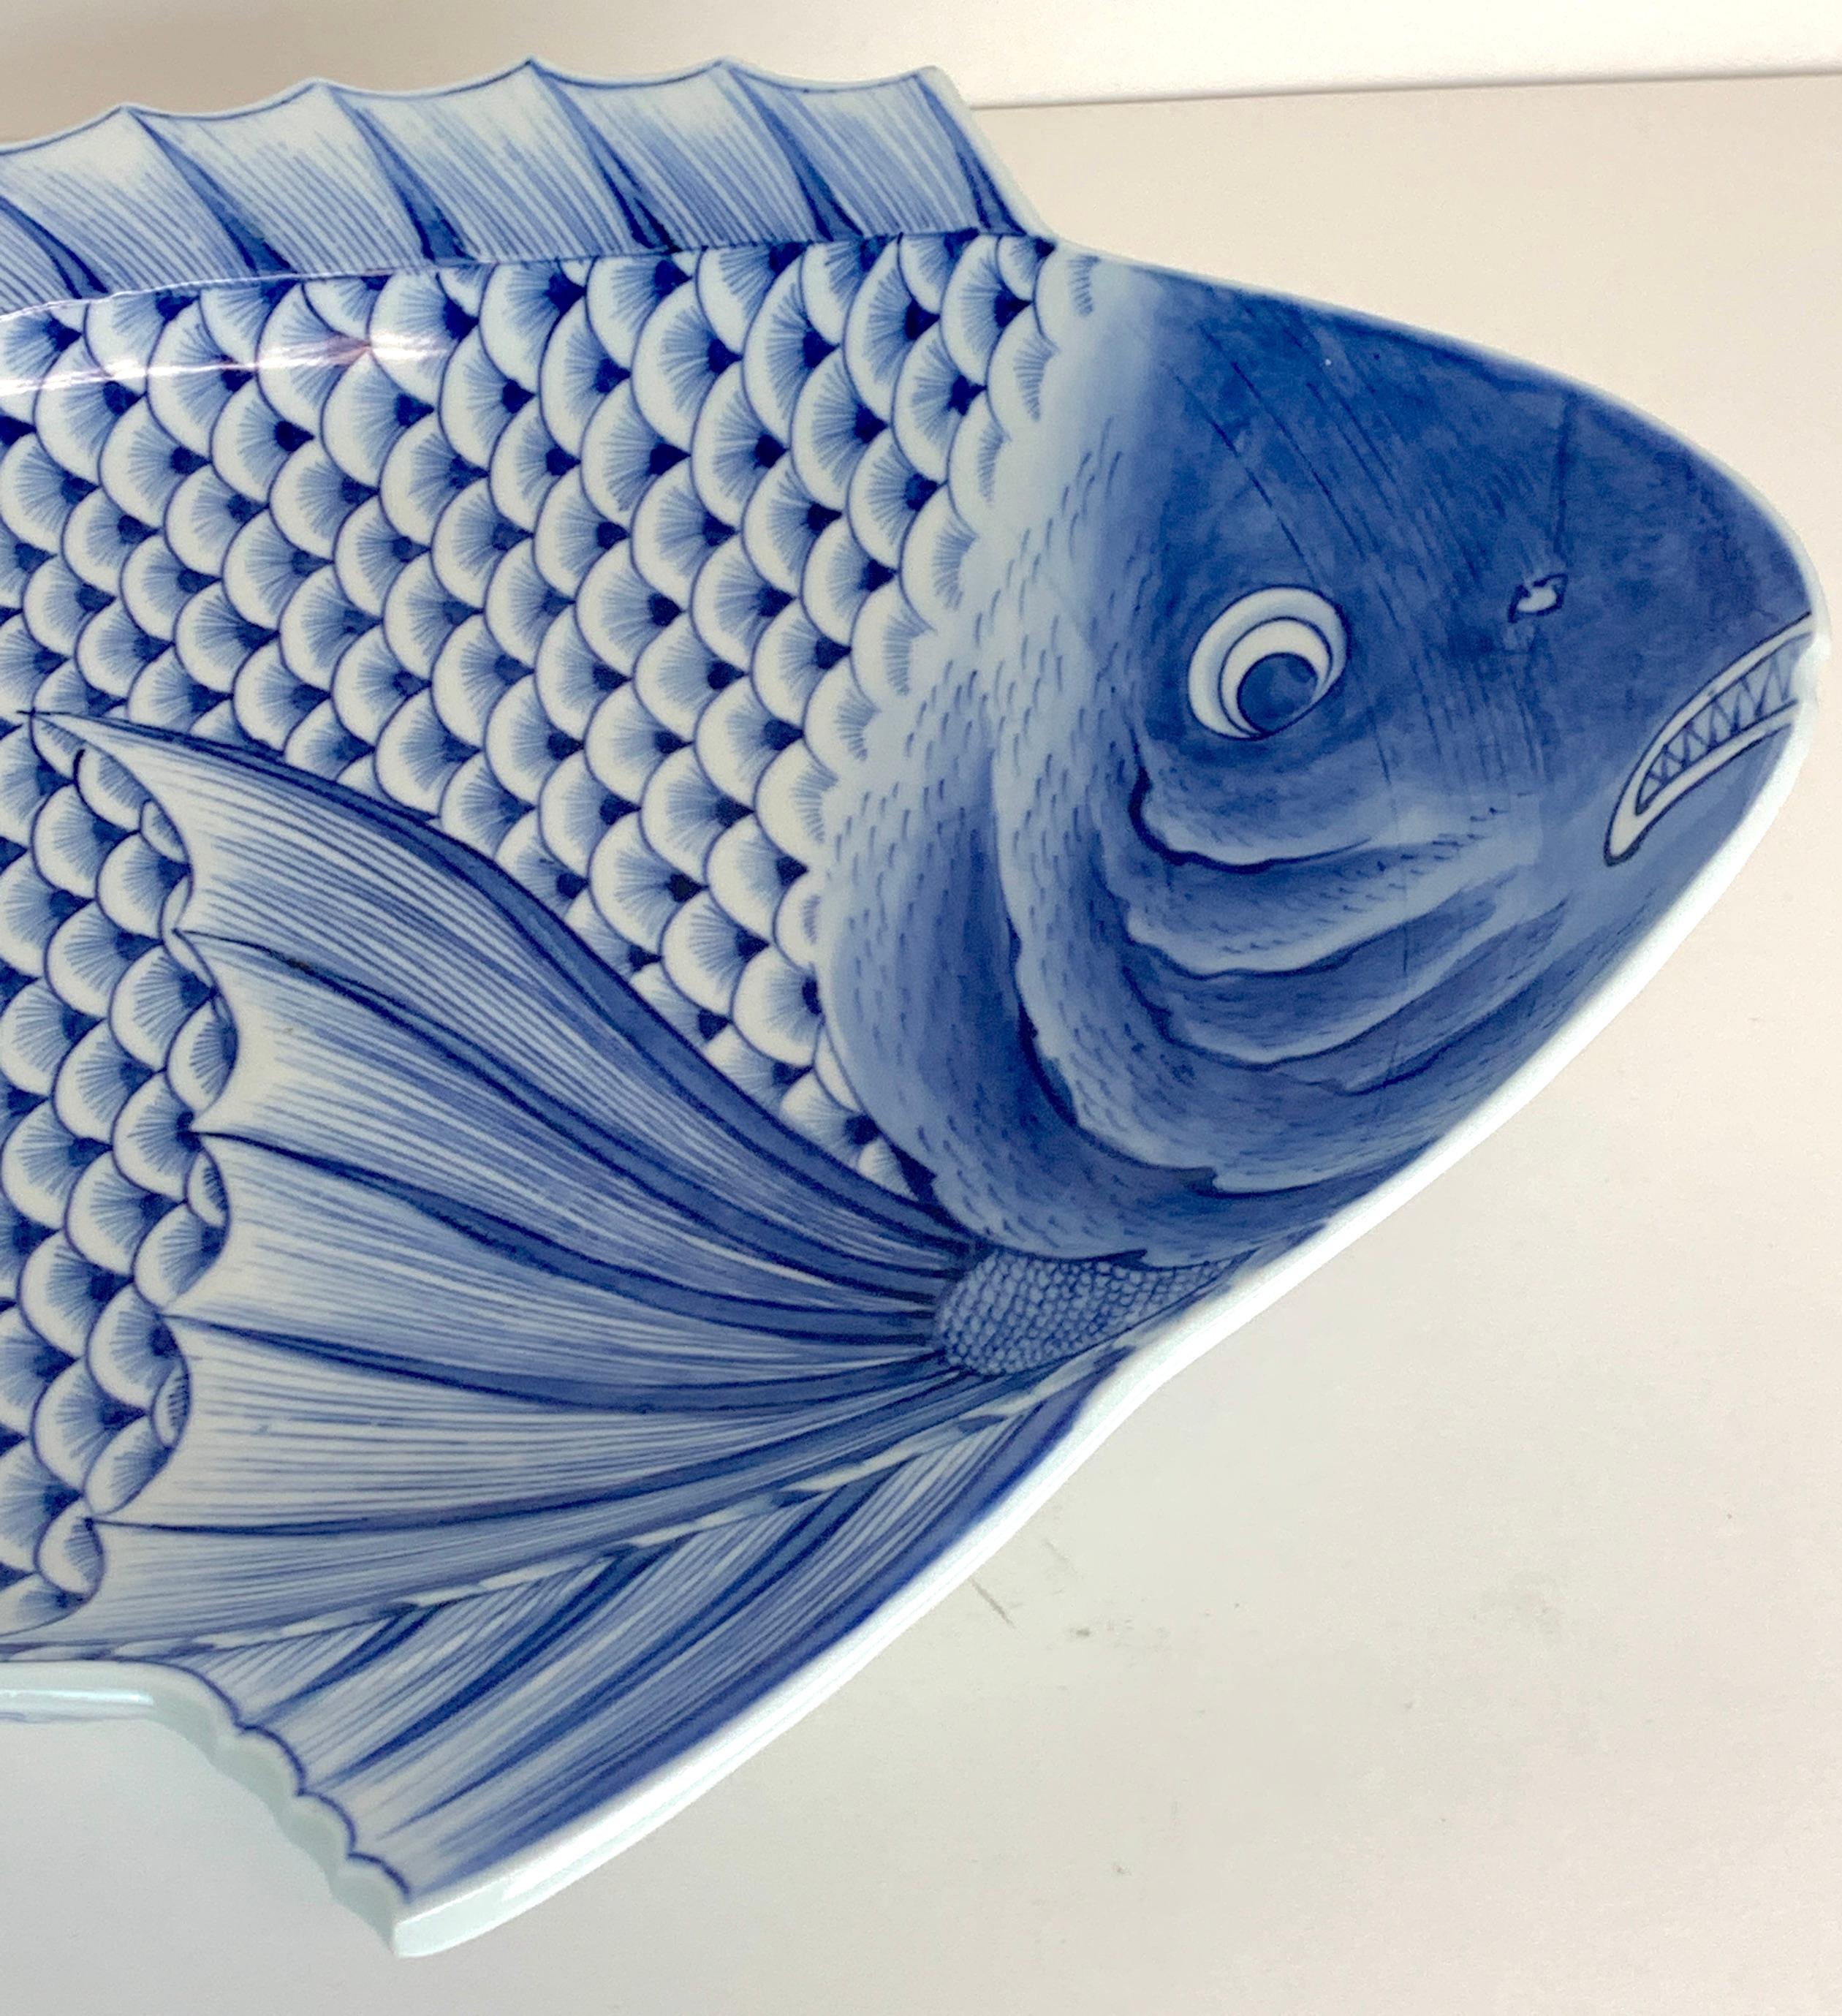 20th Century Large Meiji Imari Blue and White Fish Plate, by Fukagawa VII